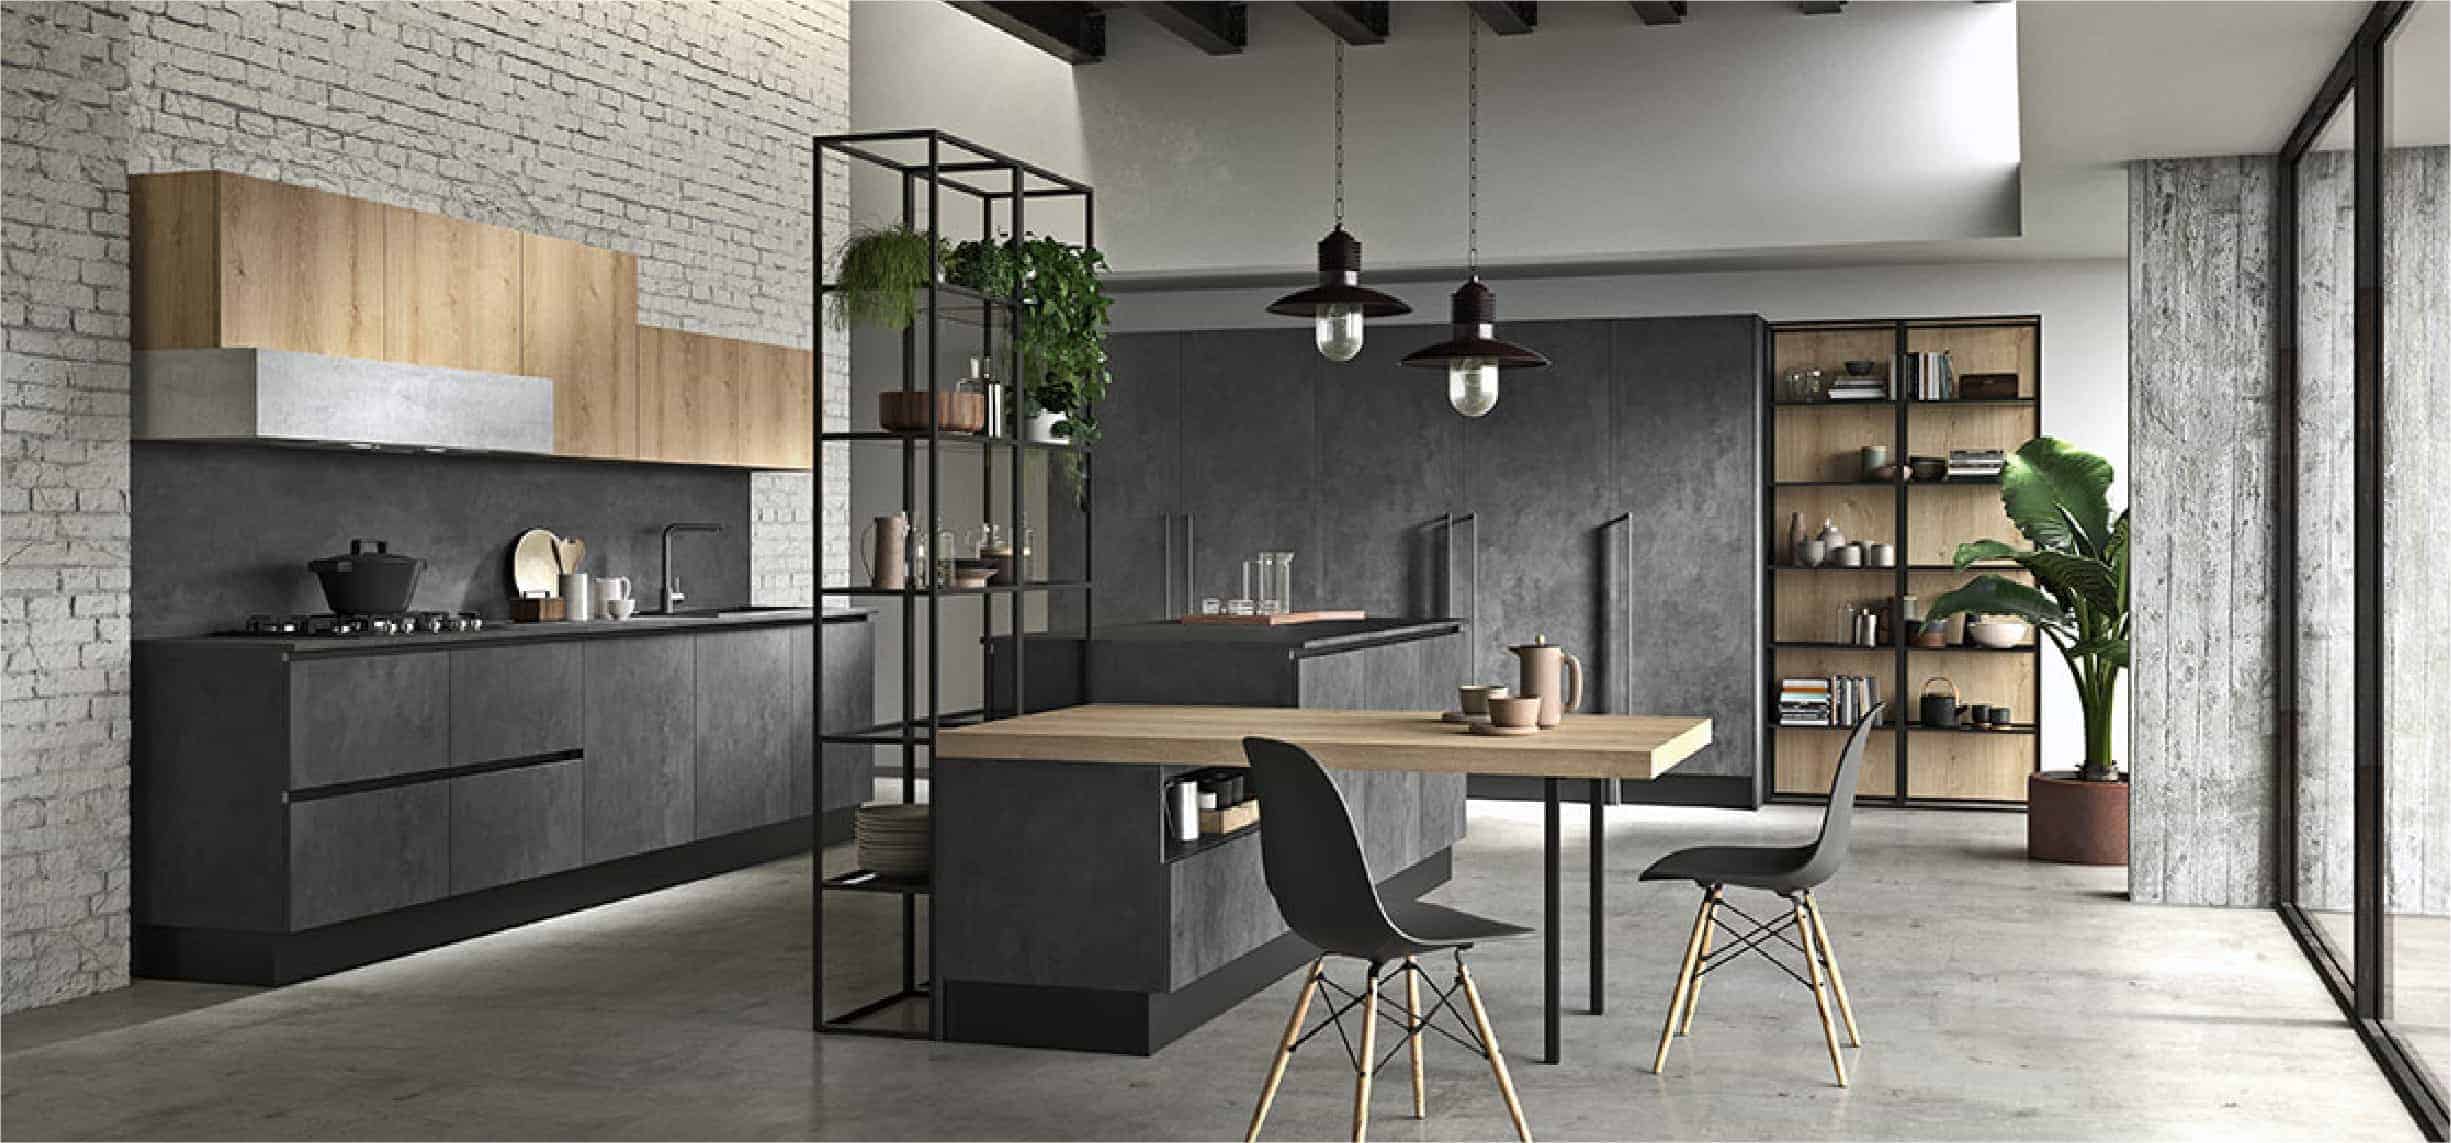 gray jerusalem kitchen design